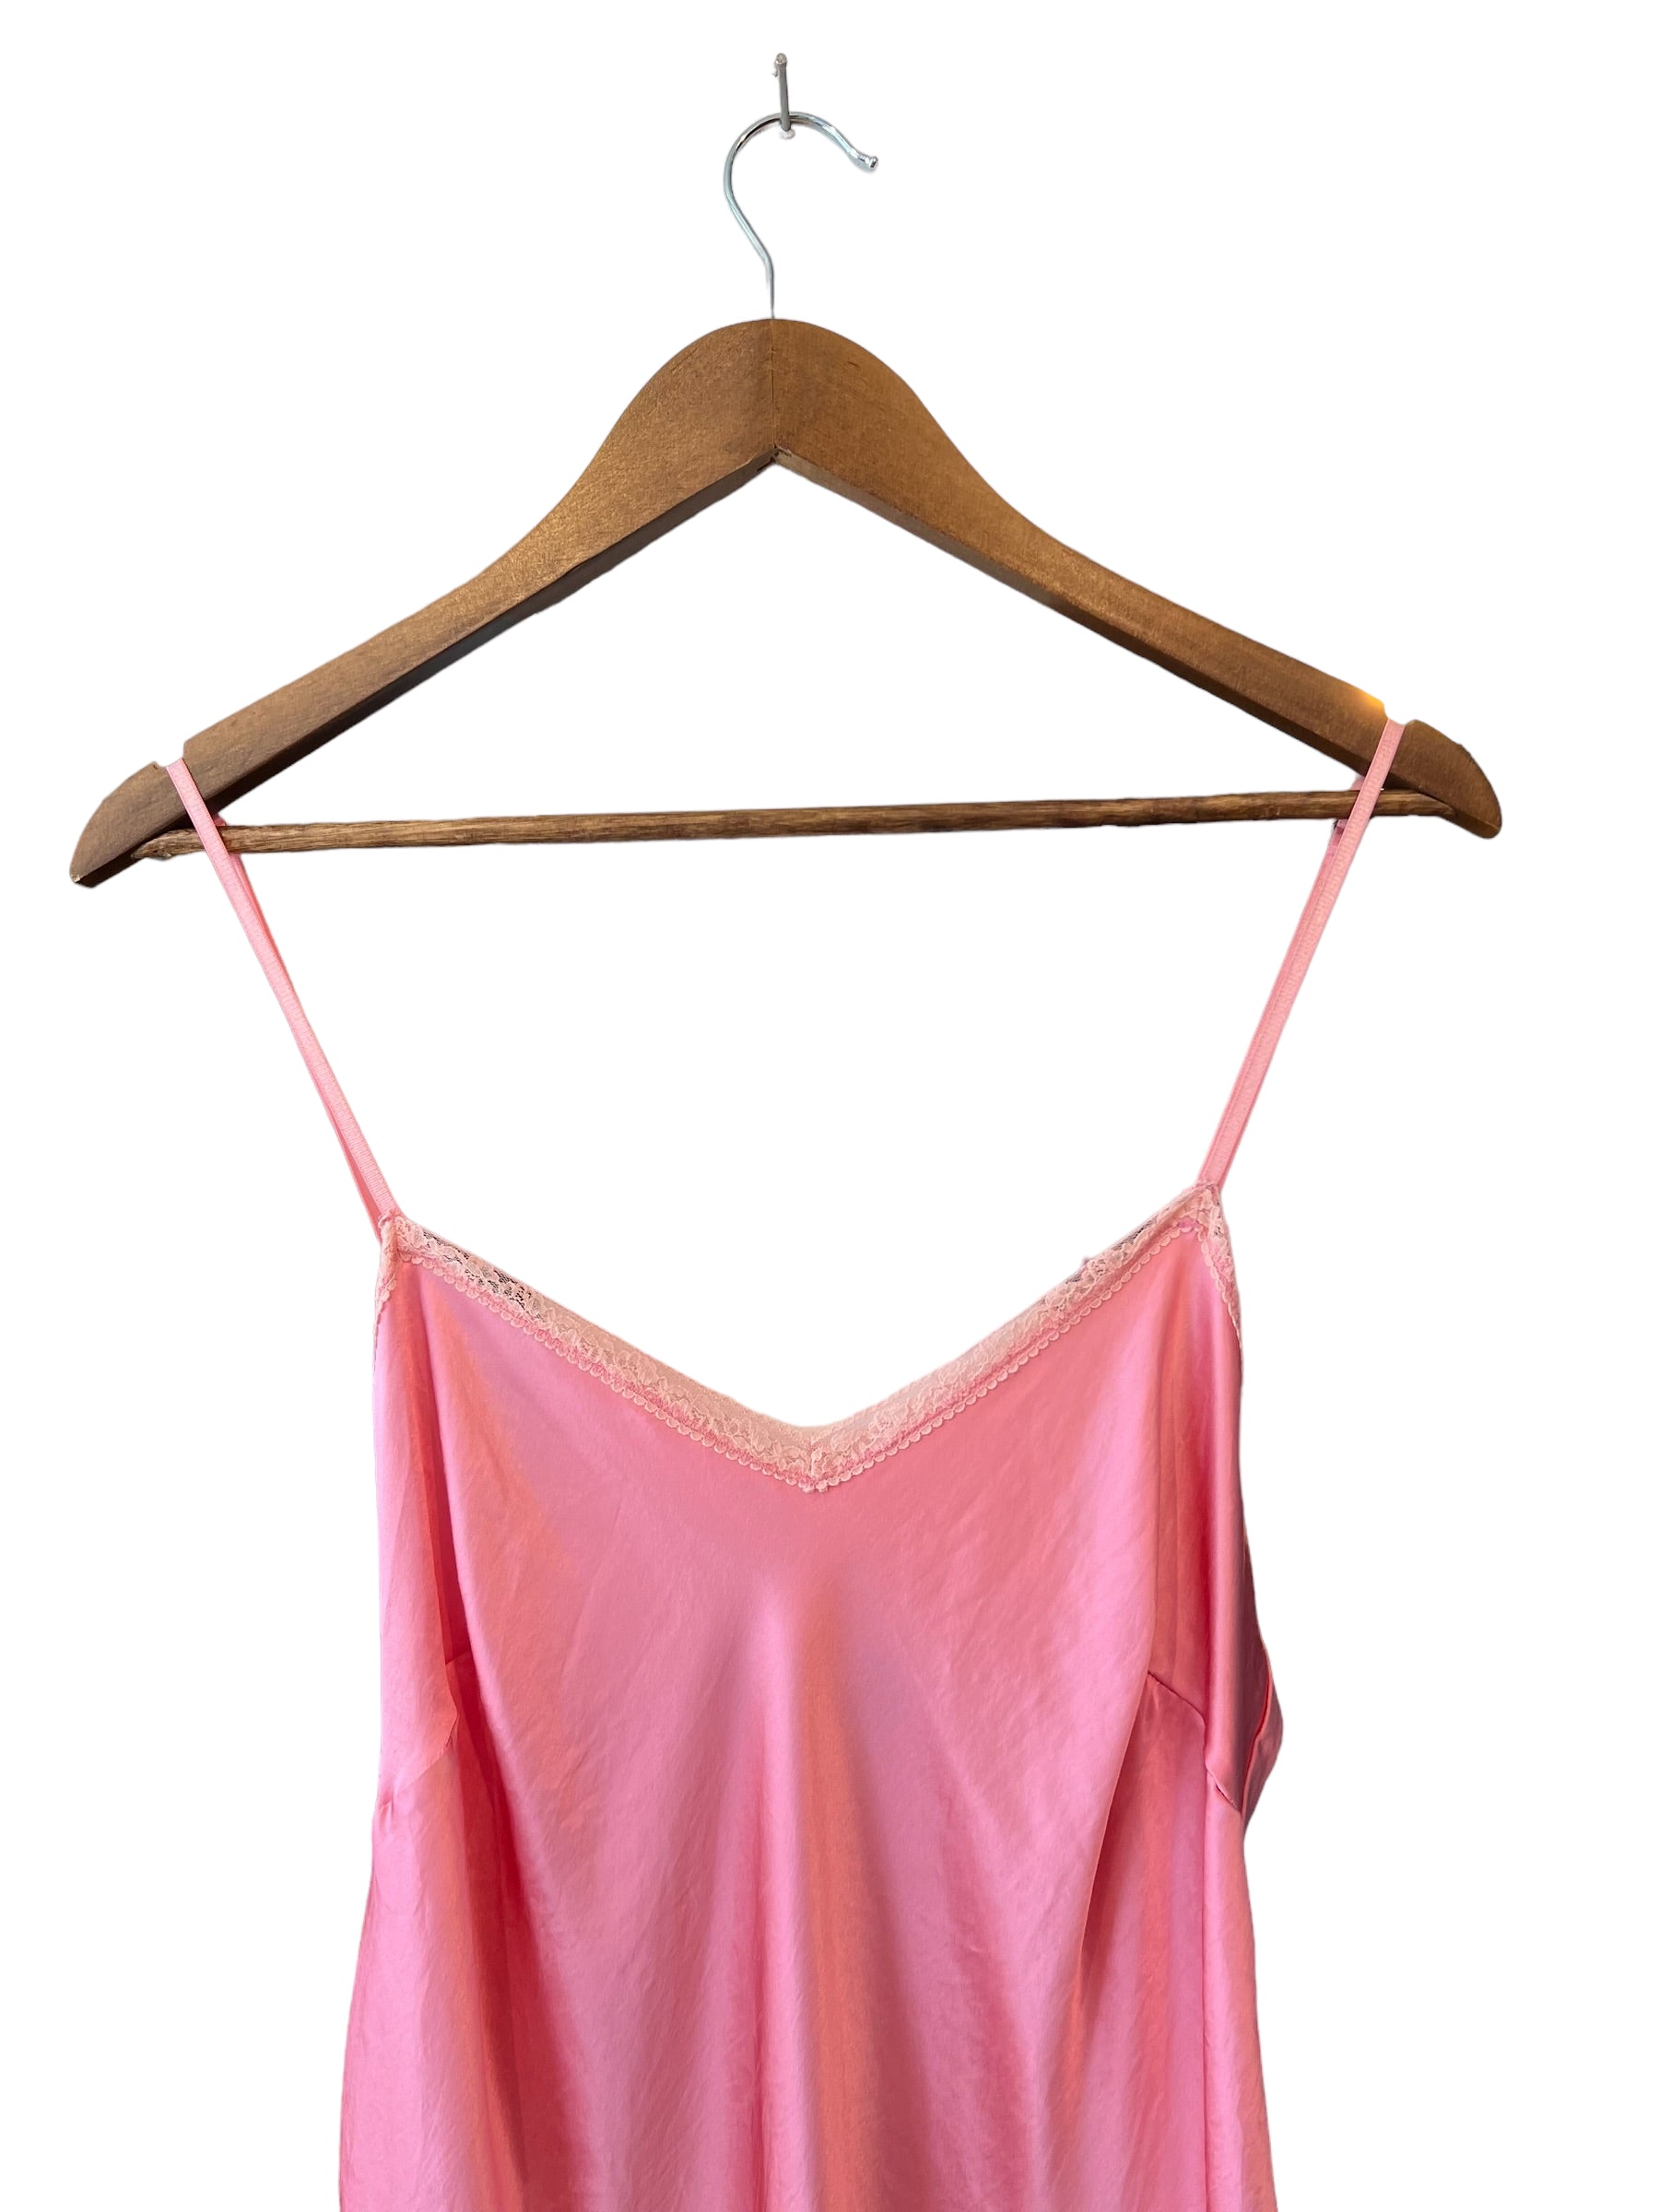 100% silk slip dress vintage in bubblegum pink